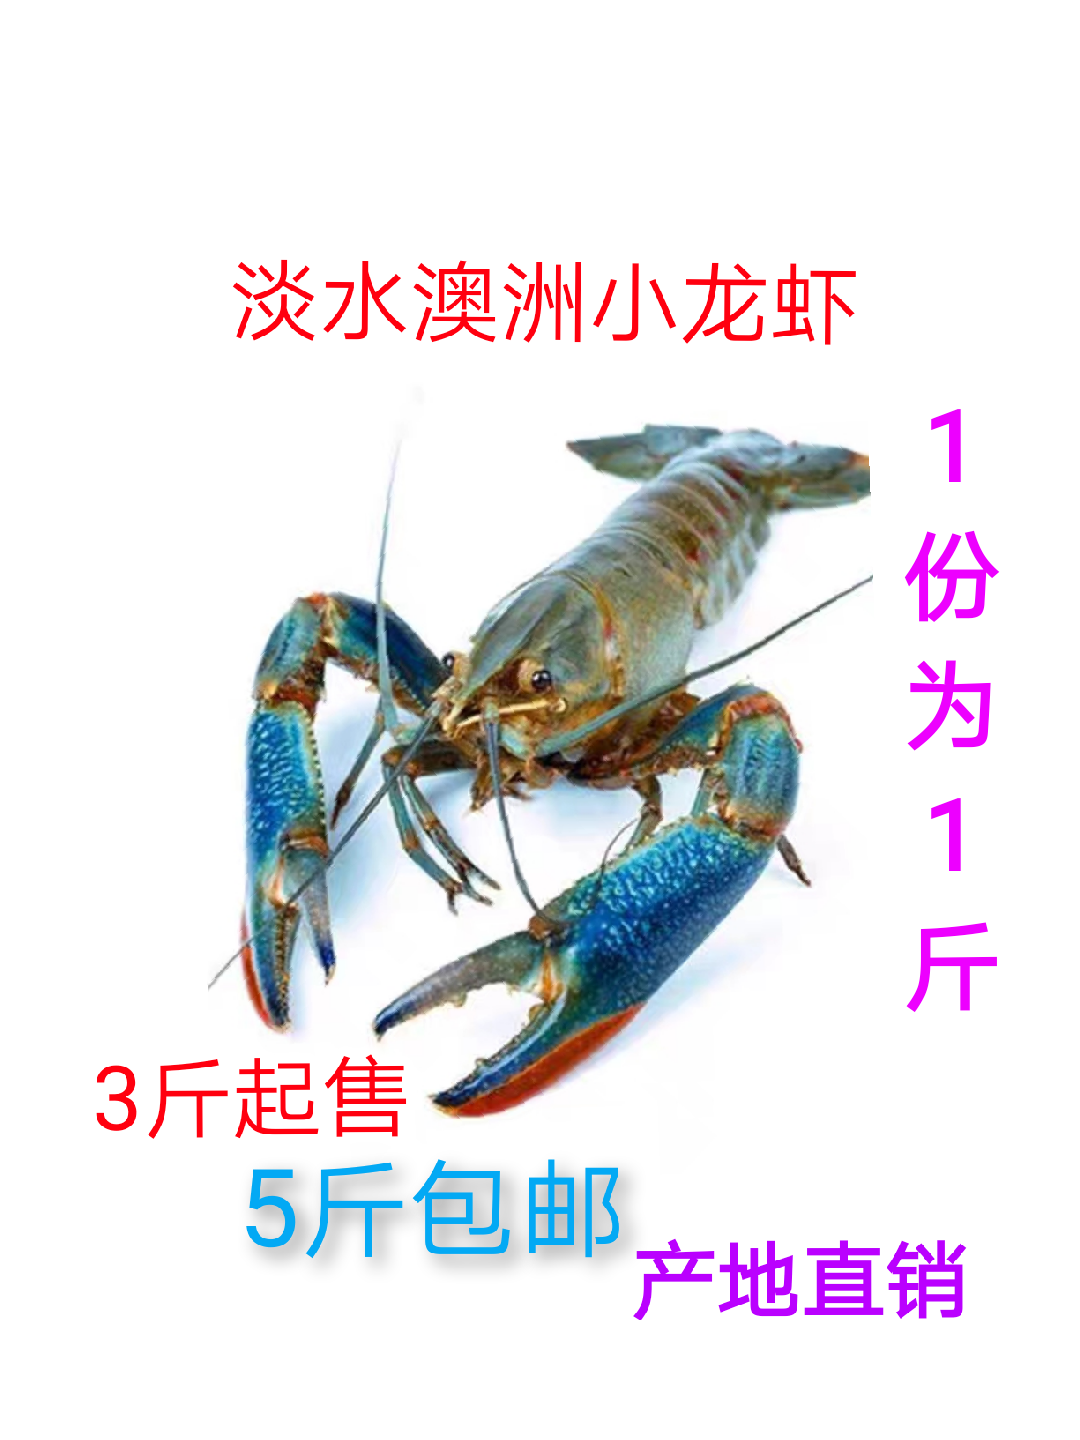 鲜活澳洲小龙虾  淡水小龙虾 干净蓝龙虾 小青龙二斤起发